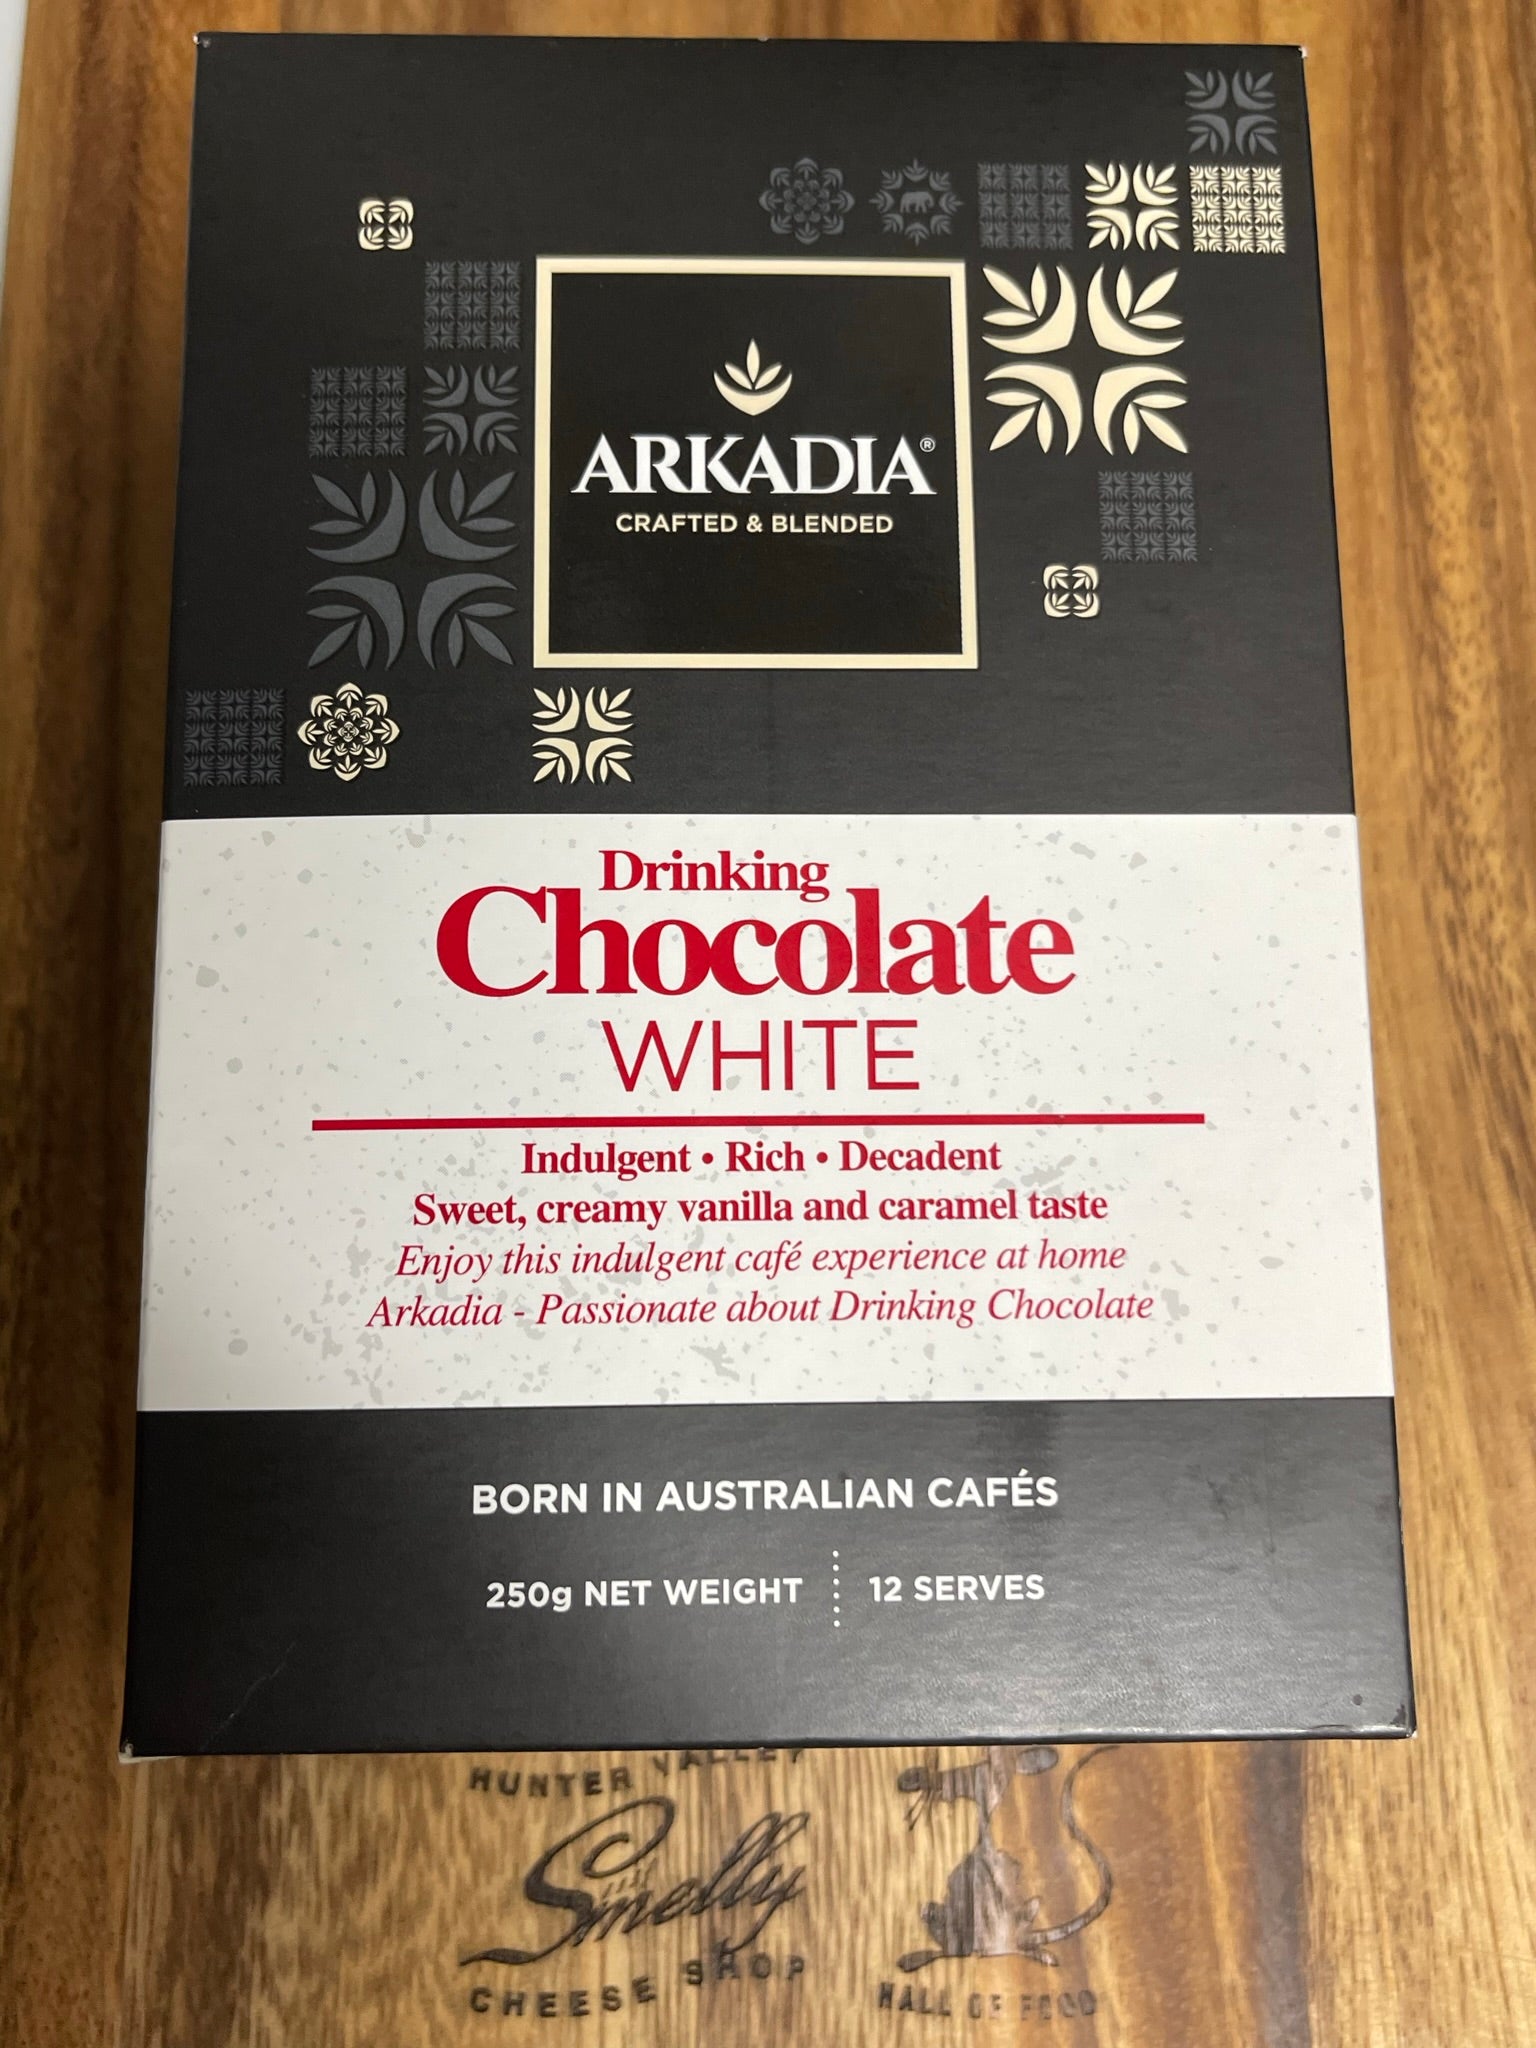 ARKADIA WHITE DRINKING CHOCOLATE